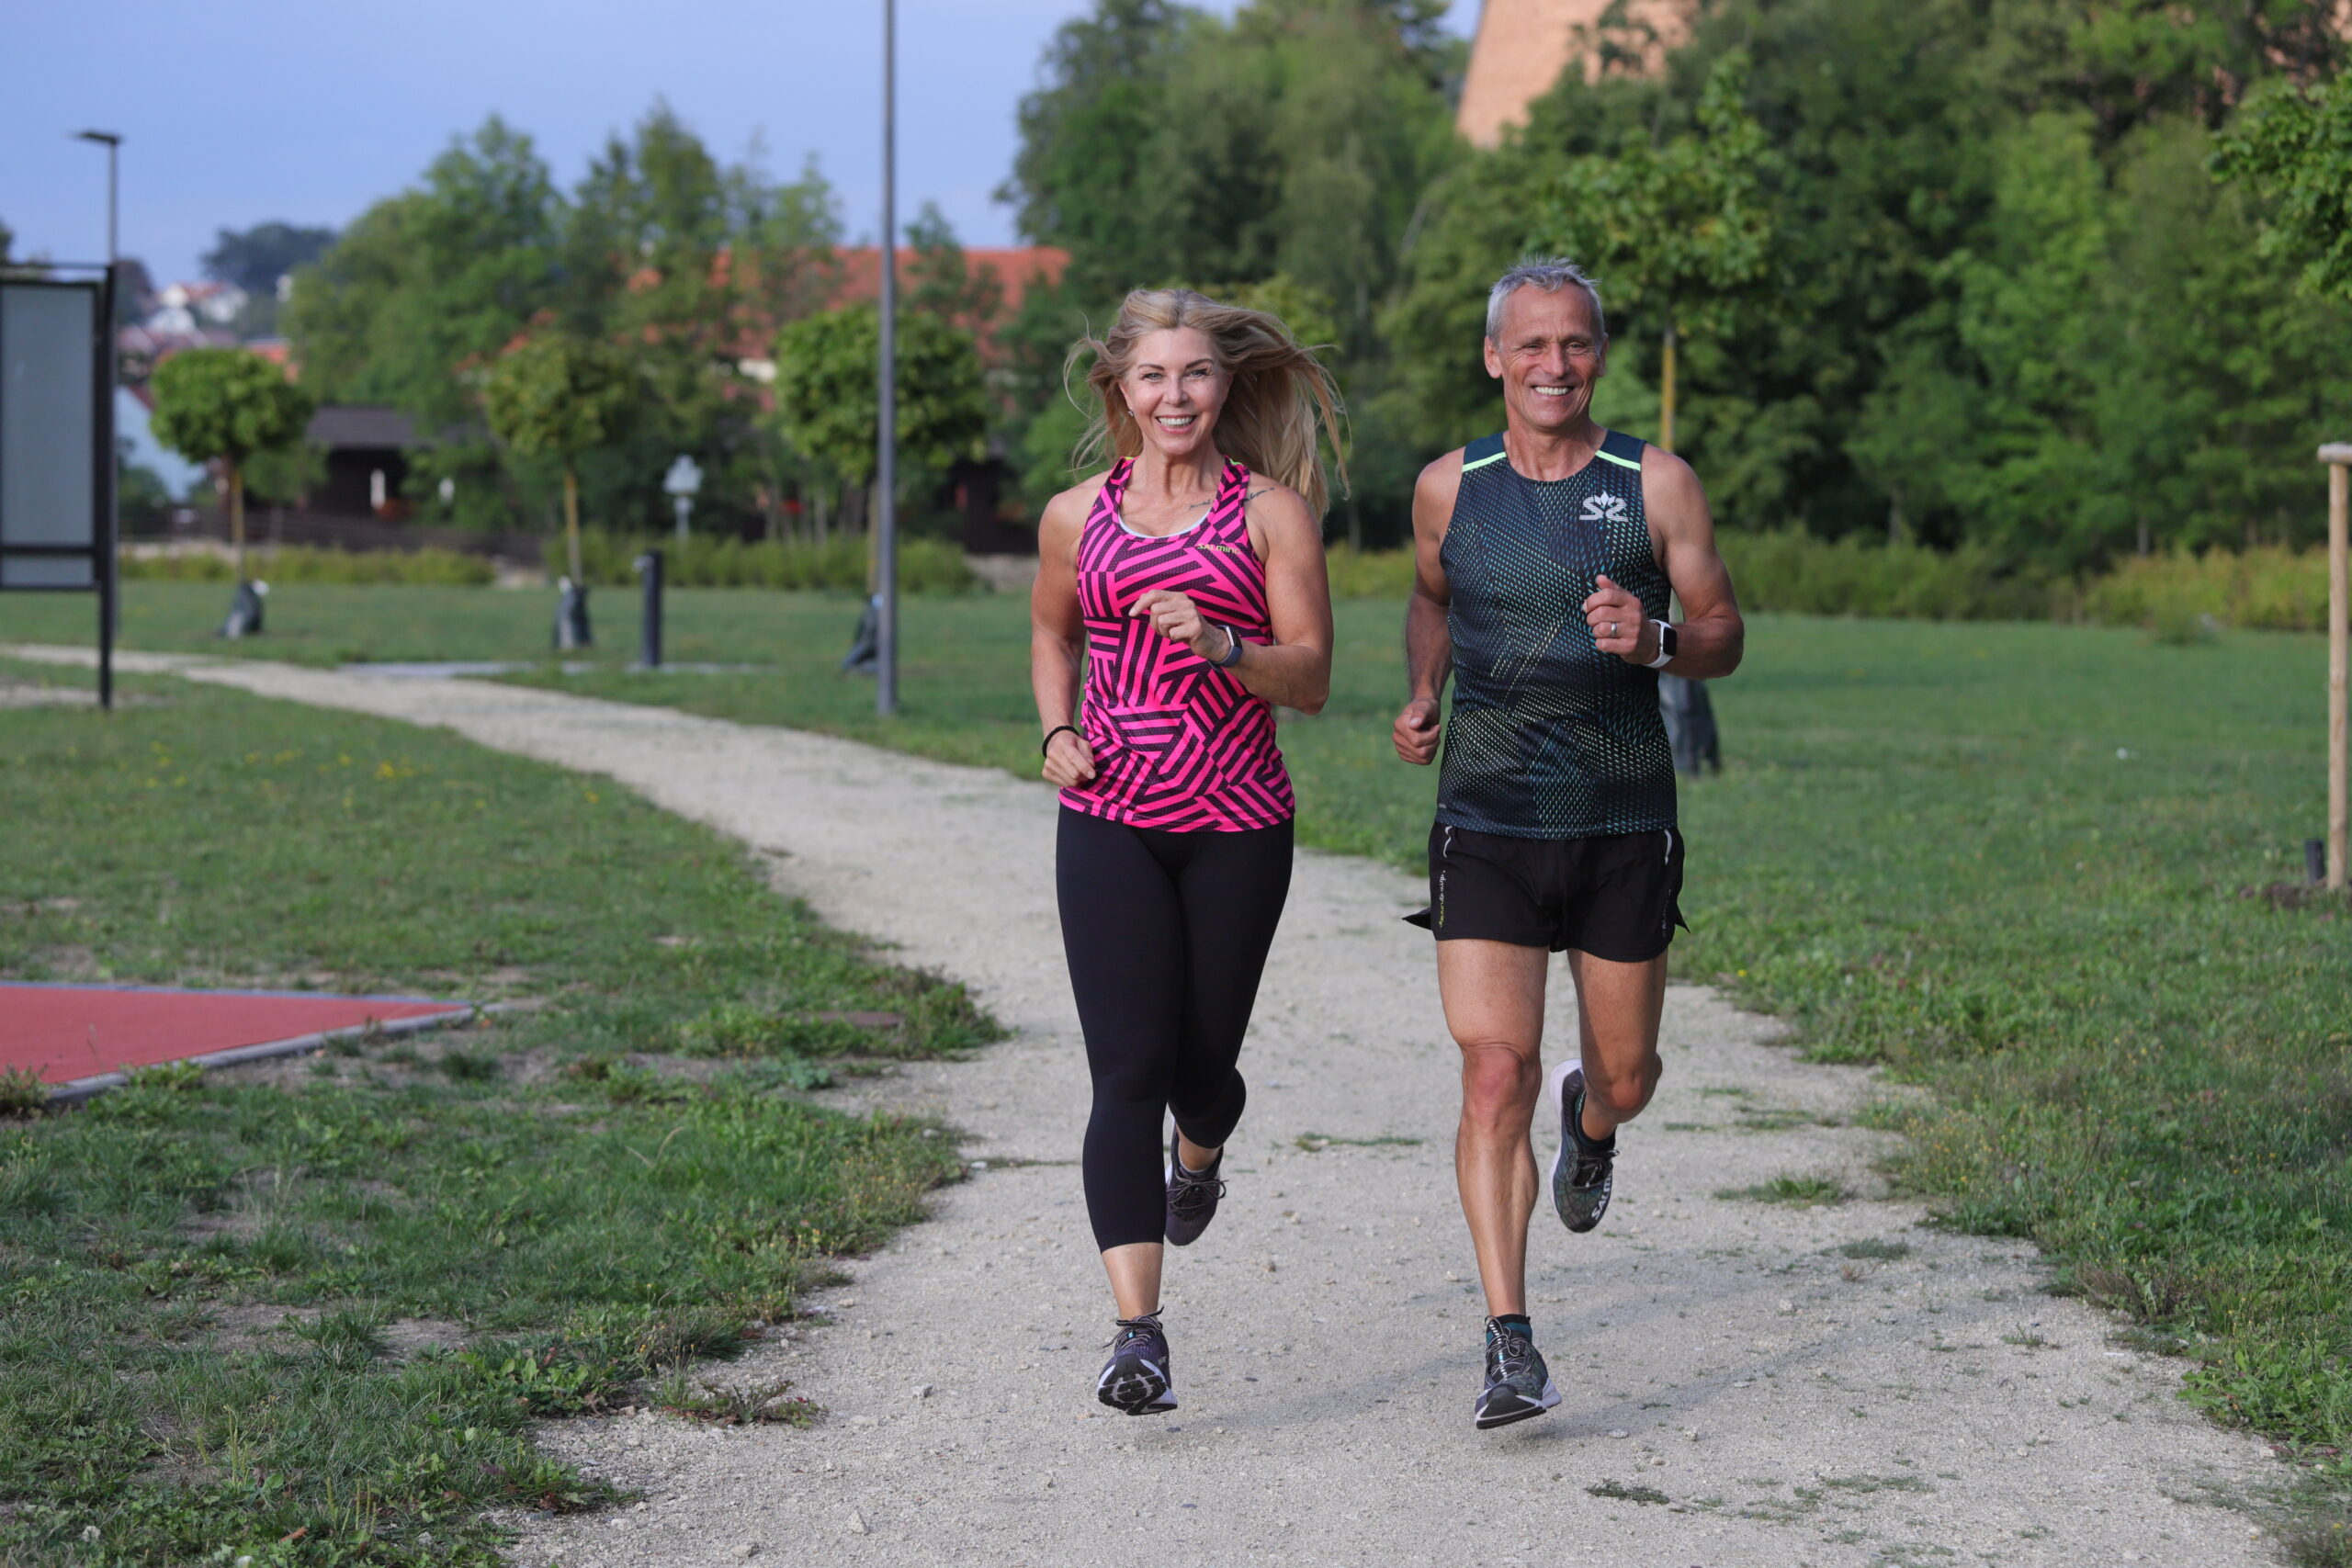 Výhody a rizika běhání. Jak běhat do vysokého věku, radí ortoped i známý český běžec